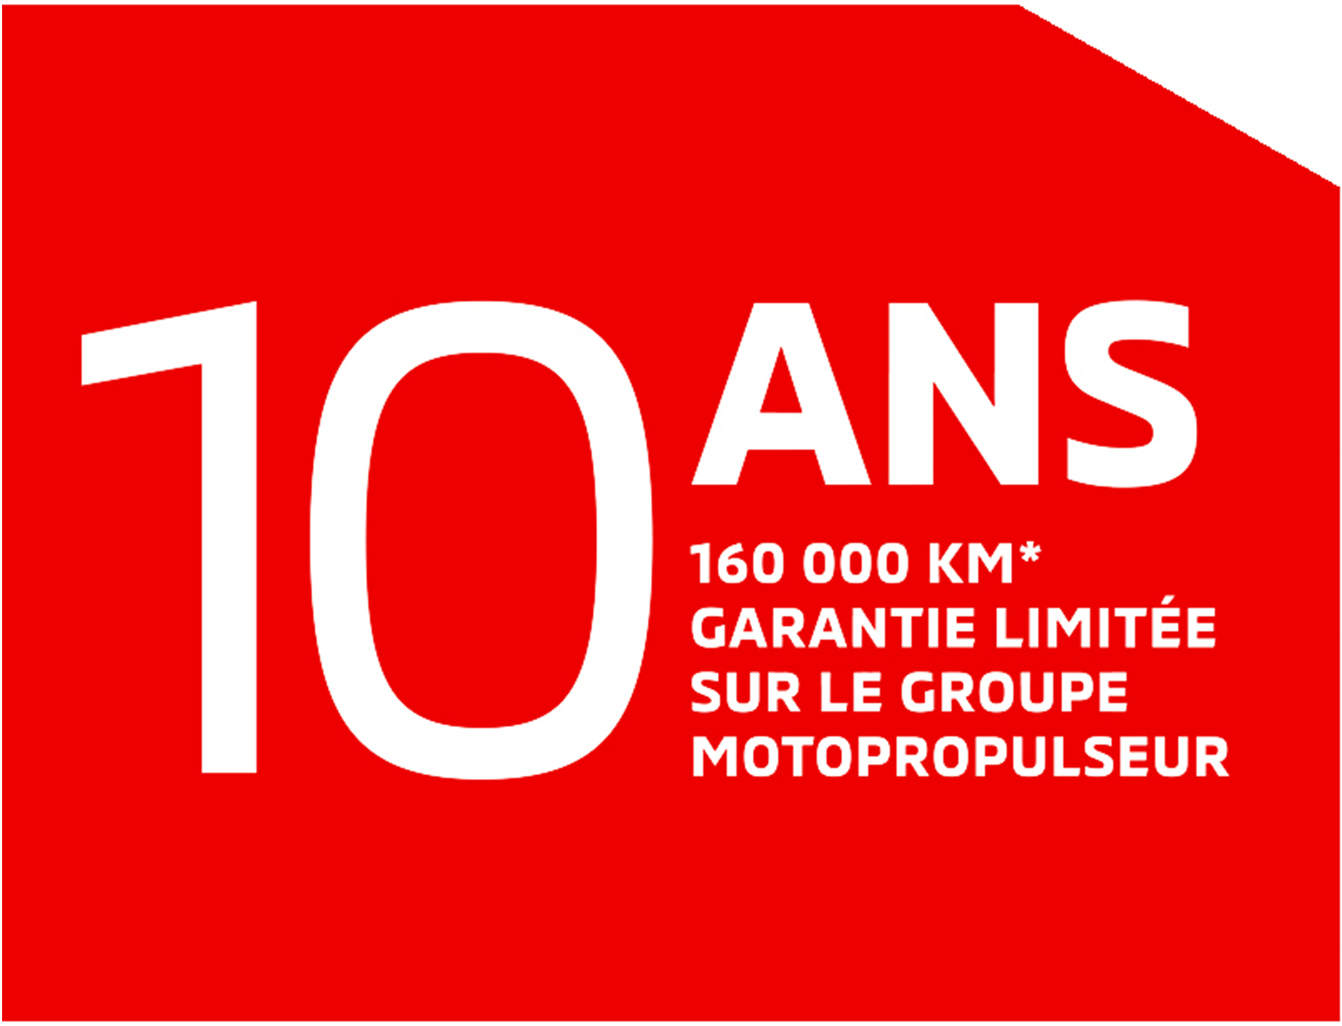 Garantie limitée de 10 ans/160 000 km sur le groupe motopropulseur.